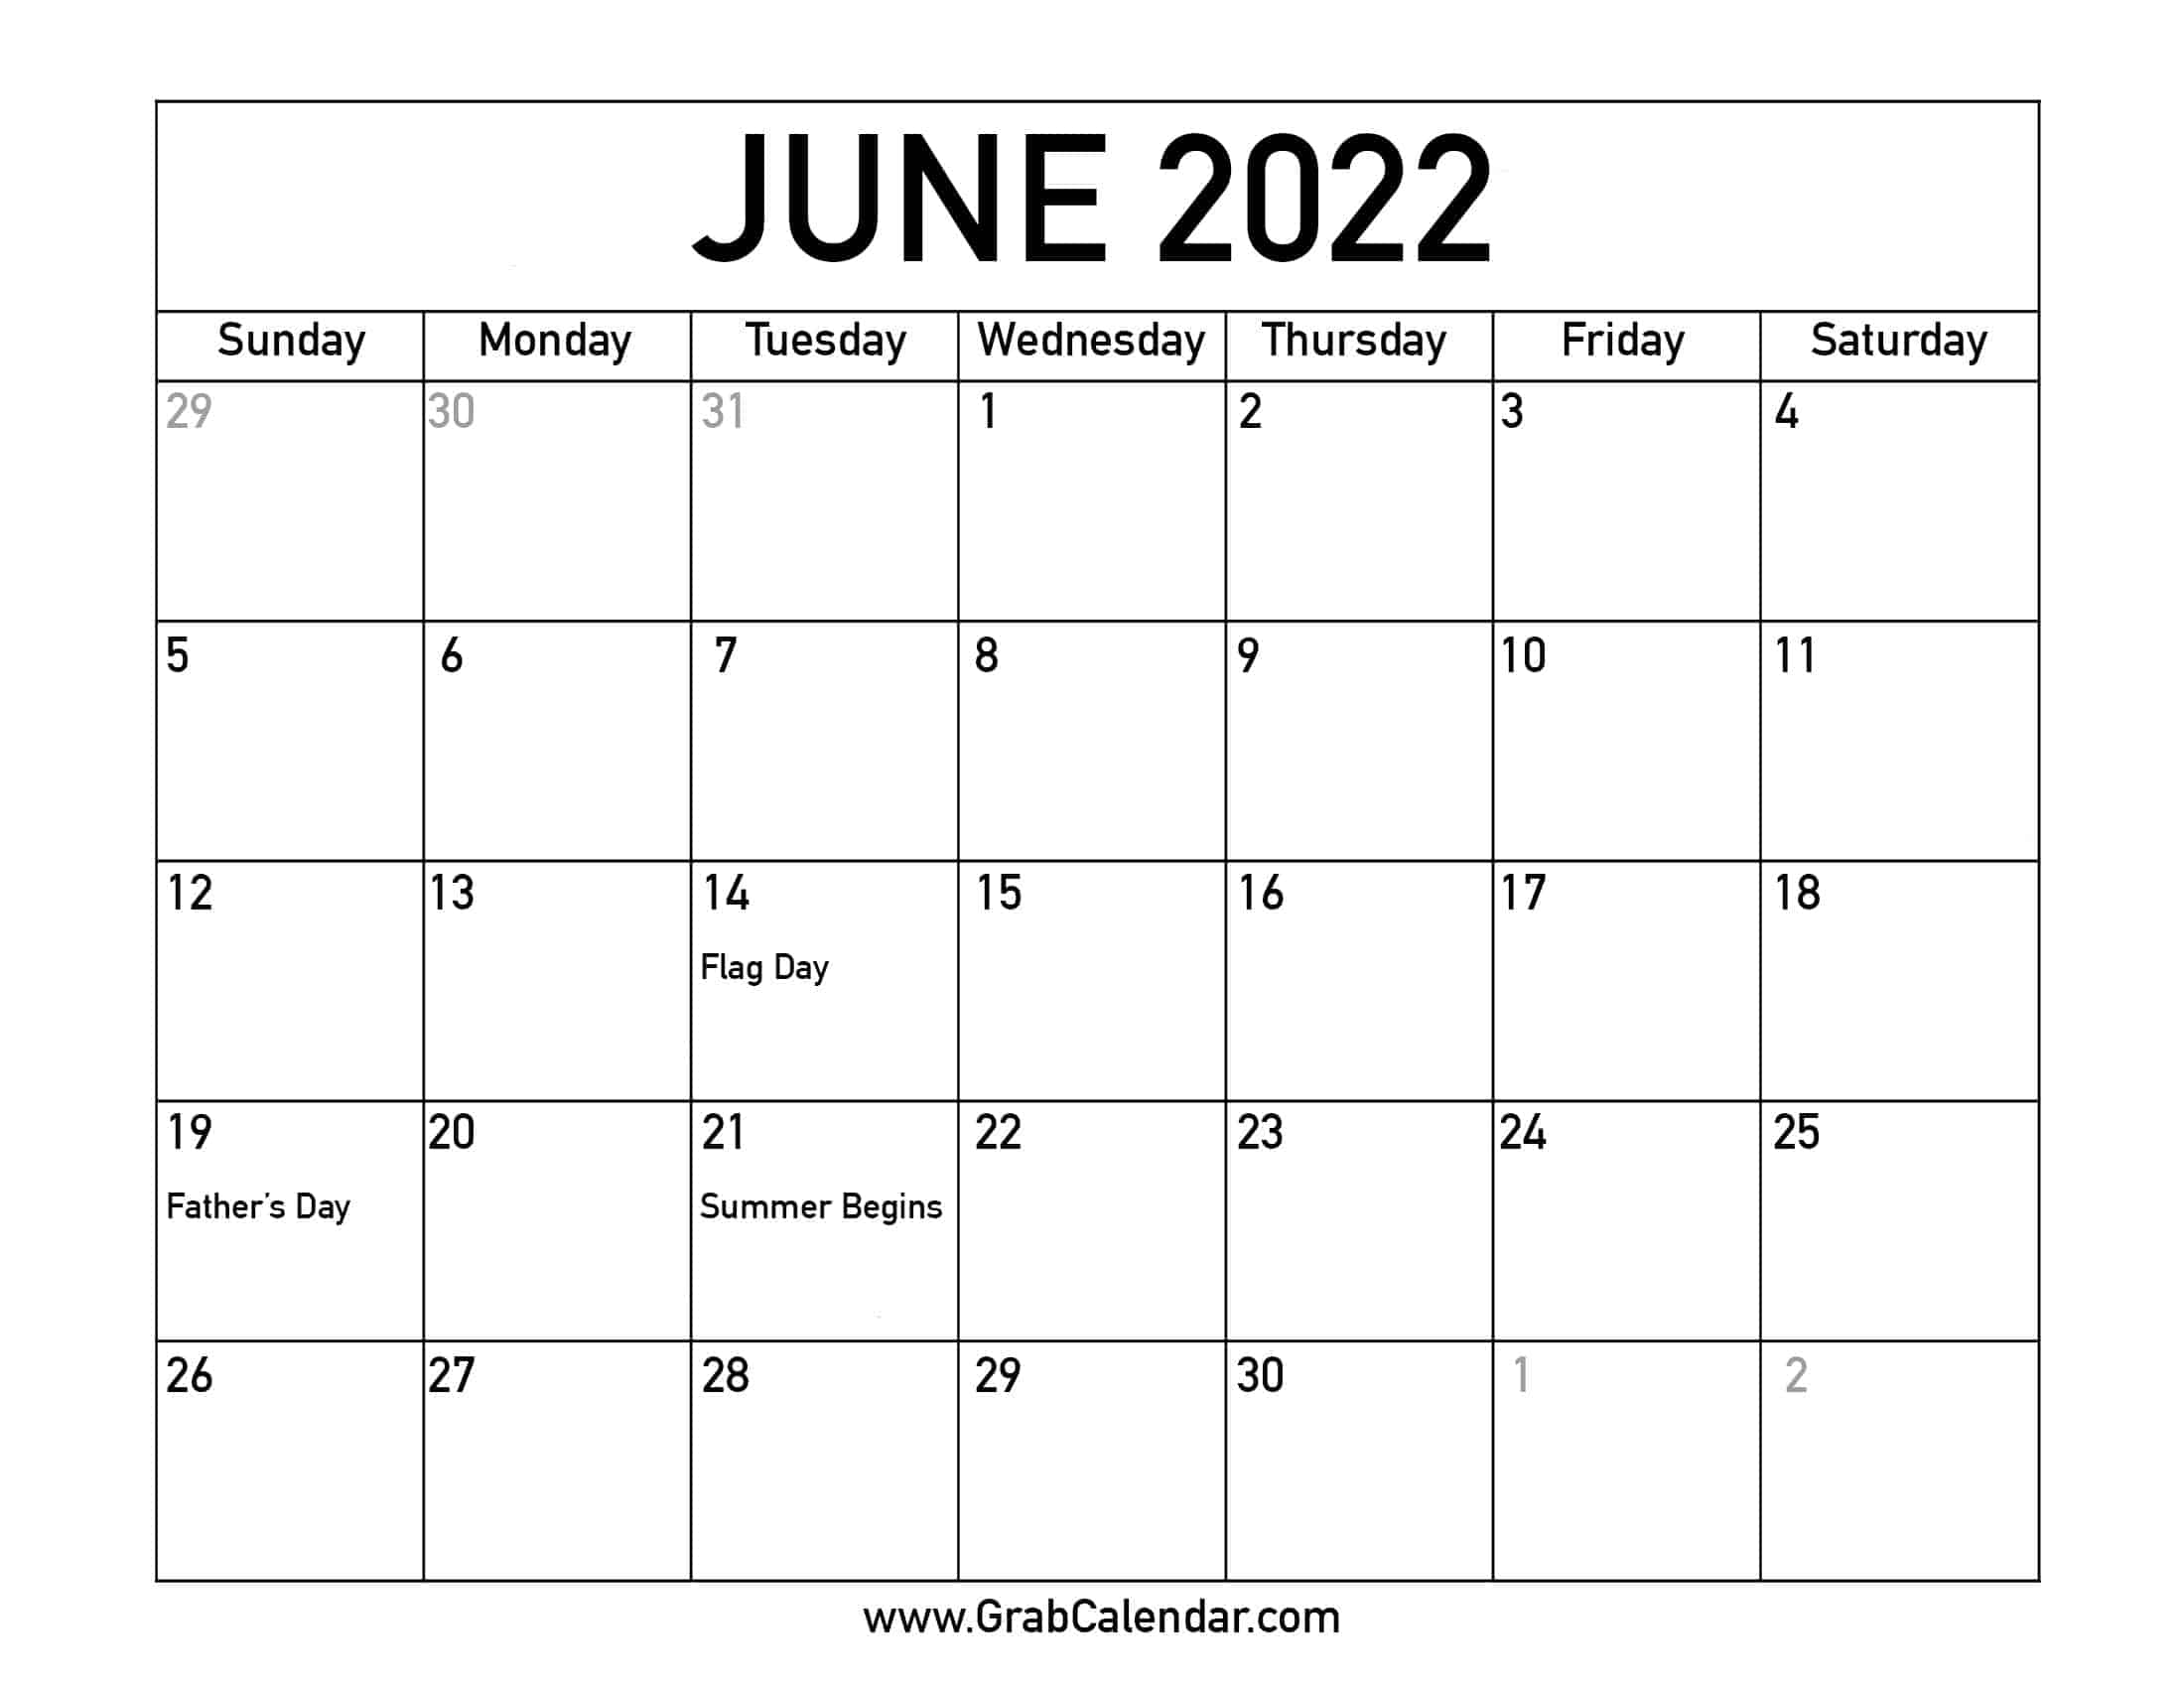 June 2022 Calendar To Print Printable June 2022 Calendar